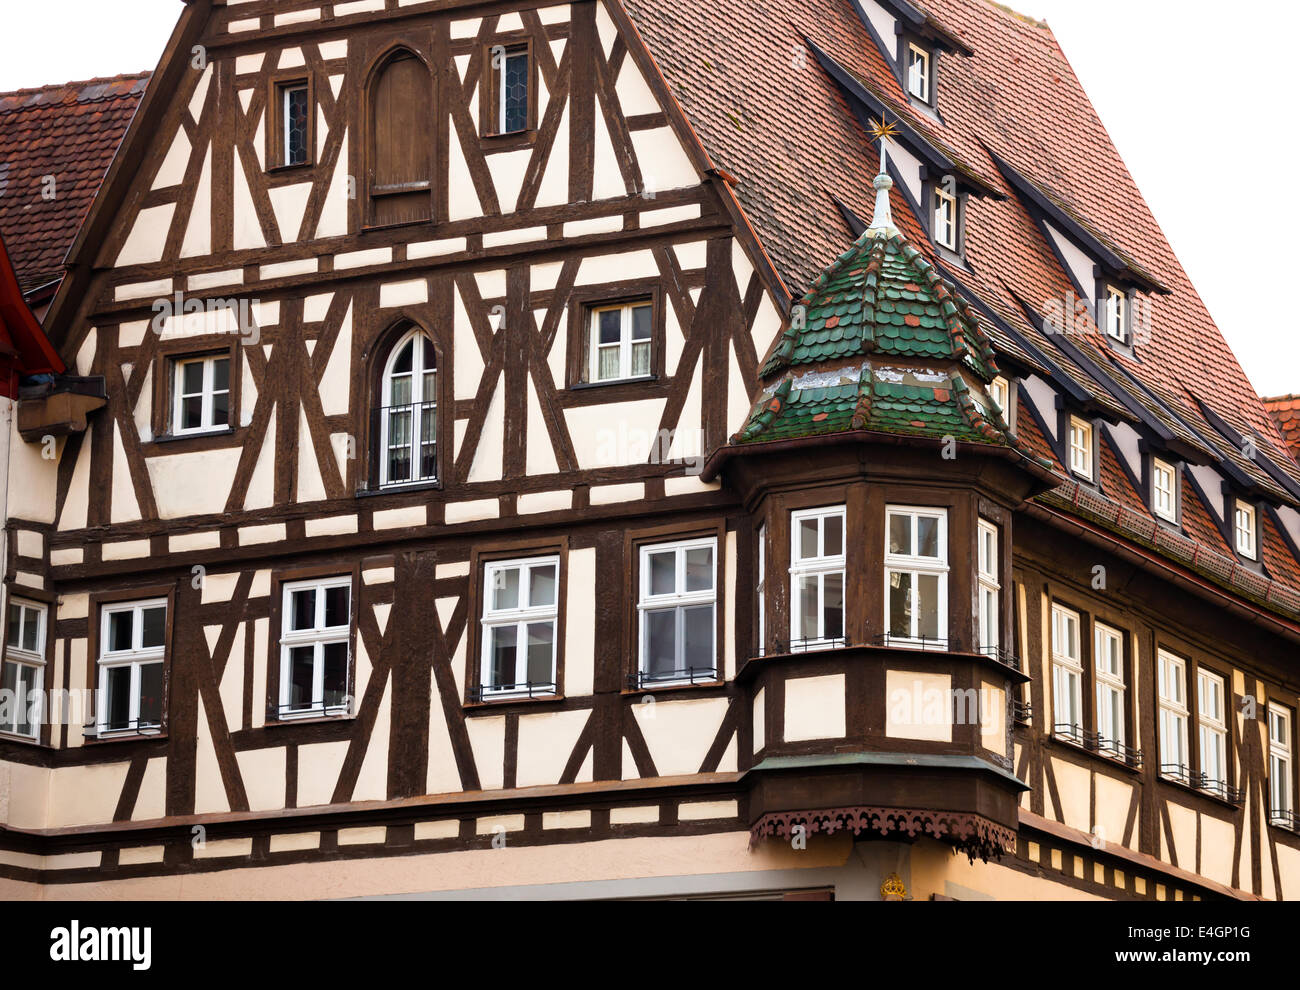 Traditionelle halbe Fachwerkhaus in das berühmte mittelalterliche Stadt Rothenburg in Bayern, Deutschland. Stockfoto